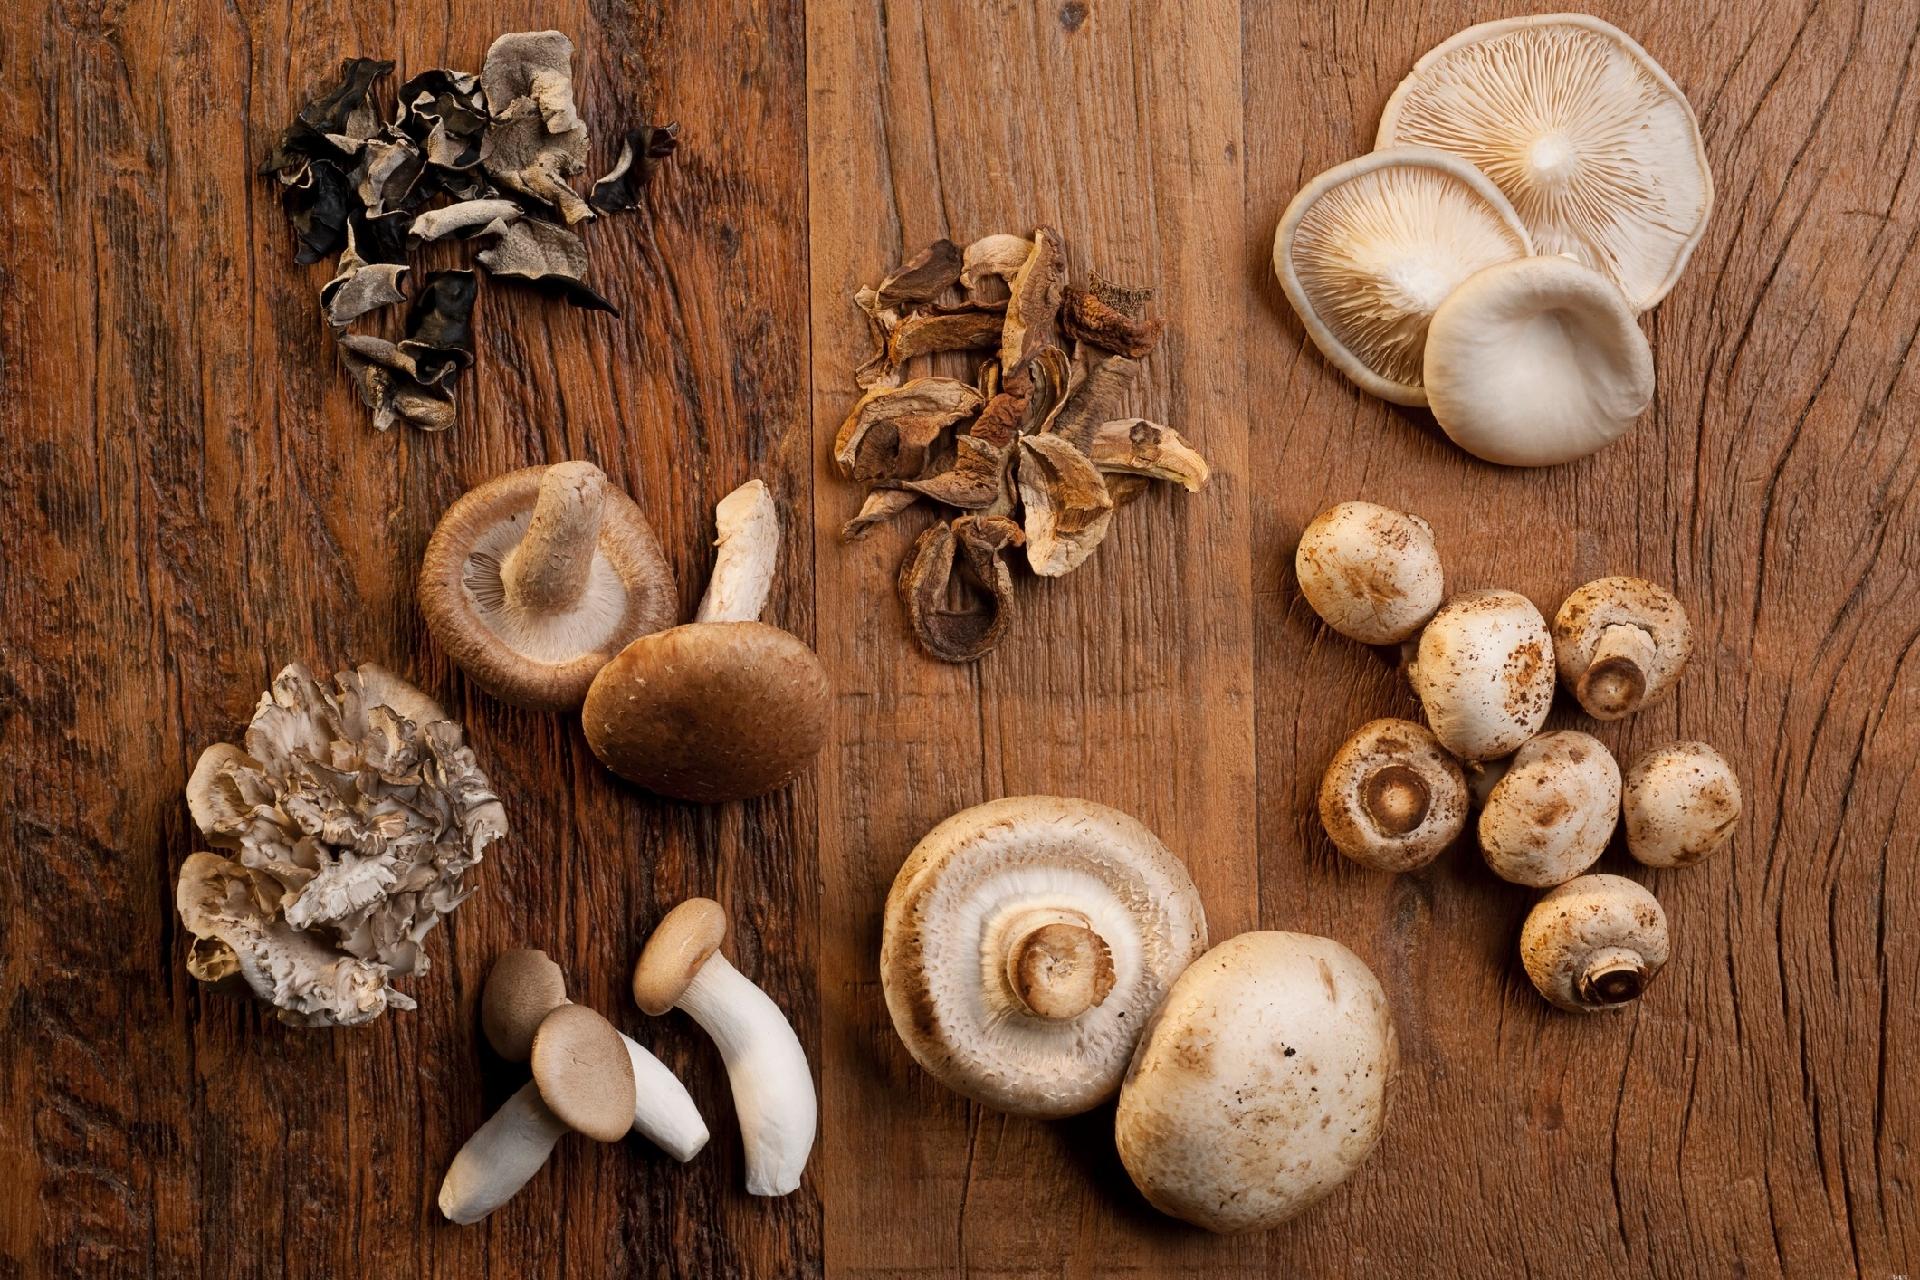 Cogumelos paris, shitake e shimeji são versáteis na cozinha e